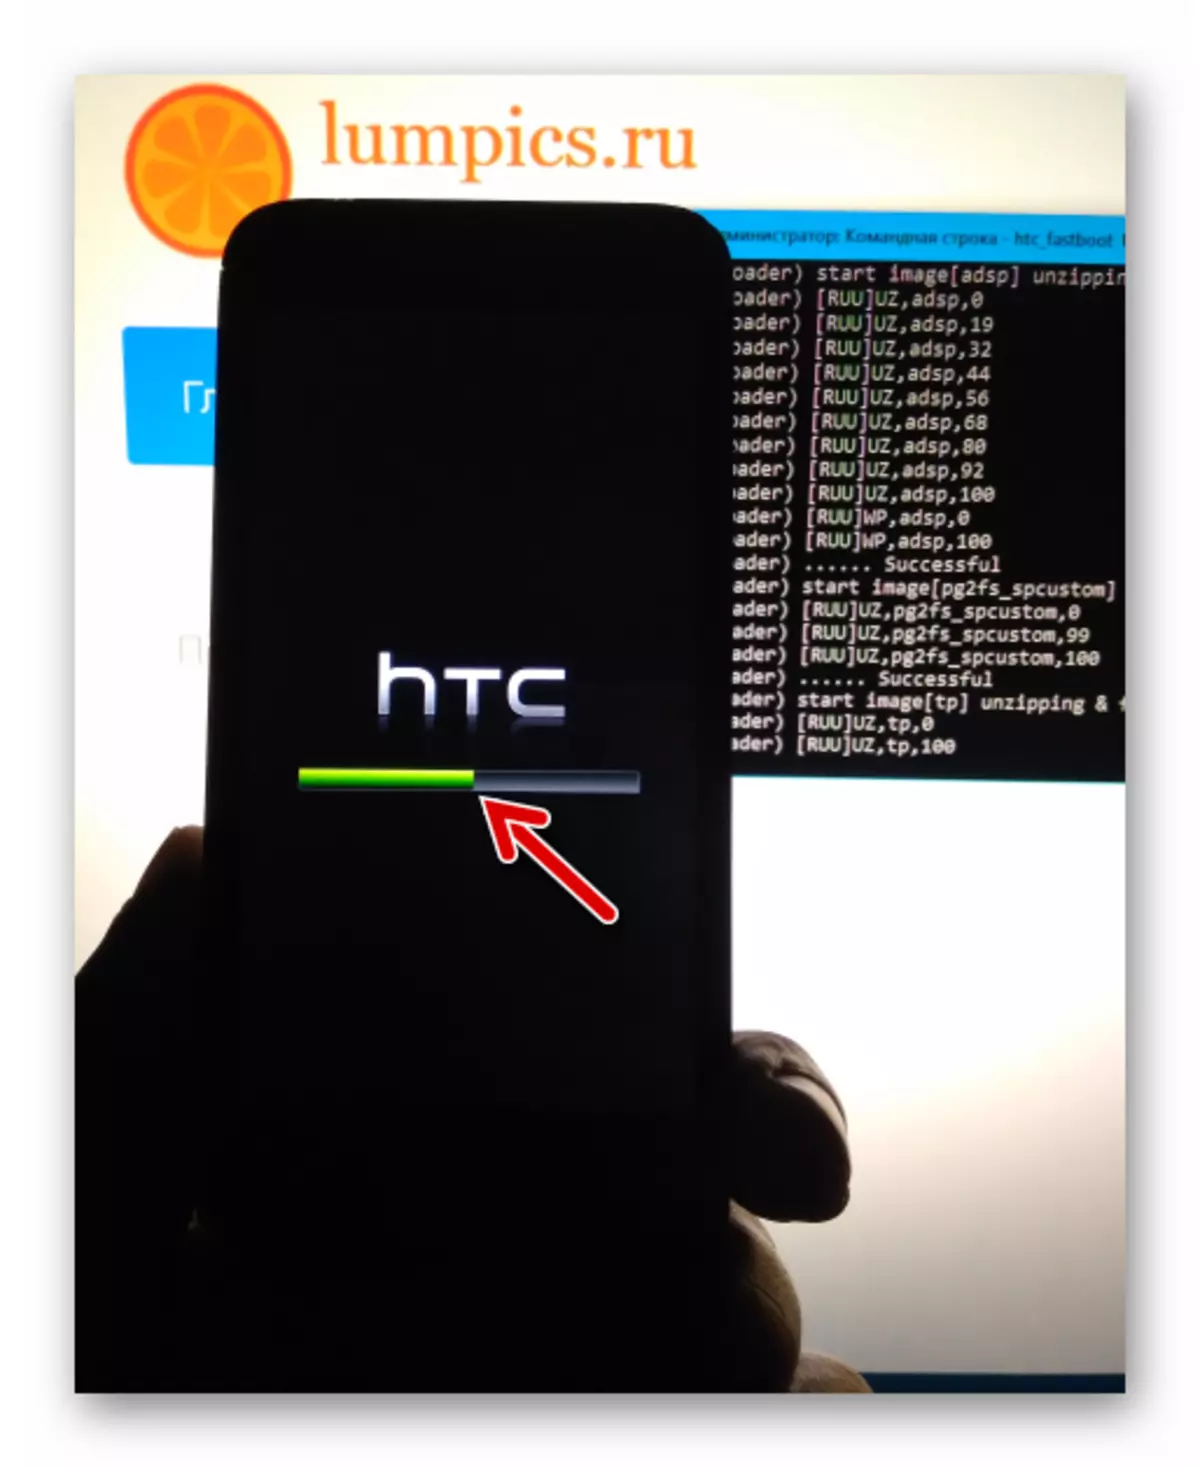 HTC는 펌웨어를 통한 빠른 부팅 동안 장치 화면 표시기 (601)의 실행을 욕망